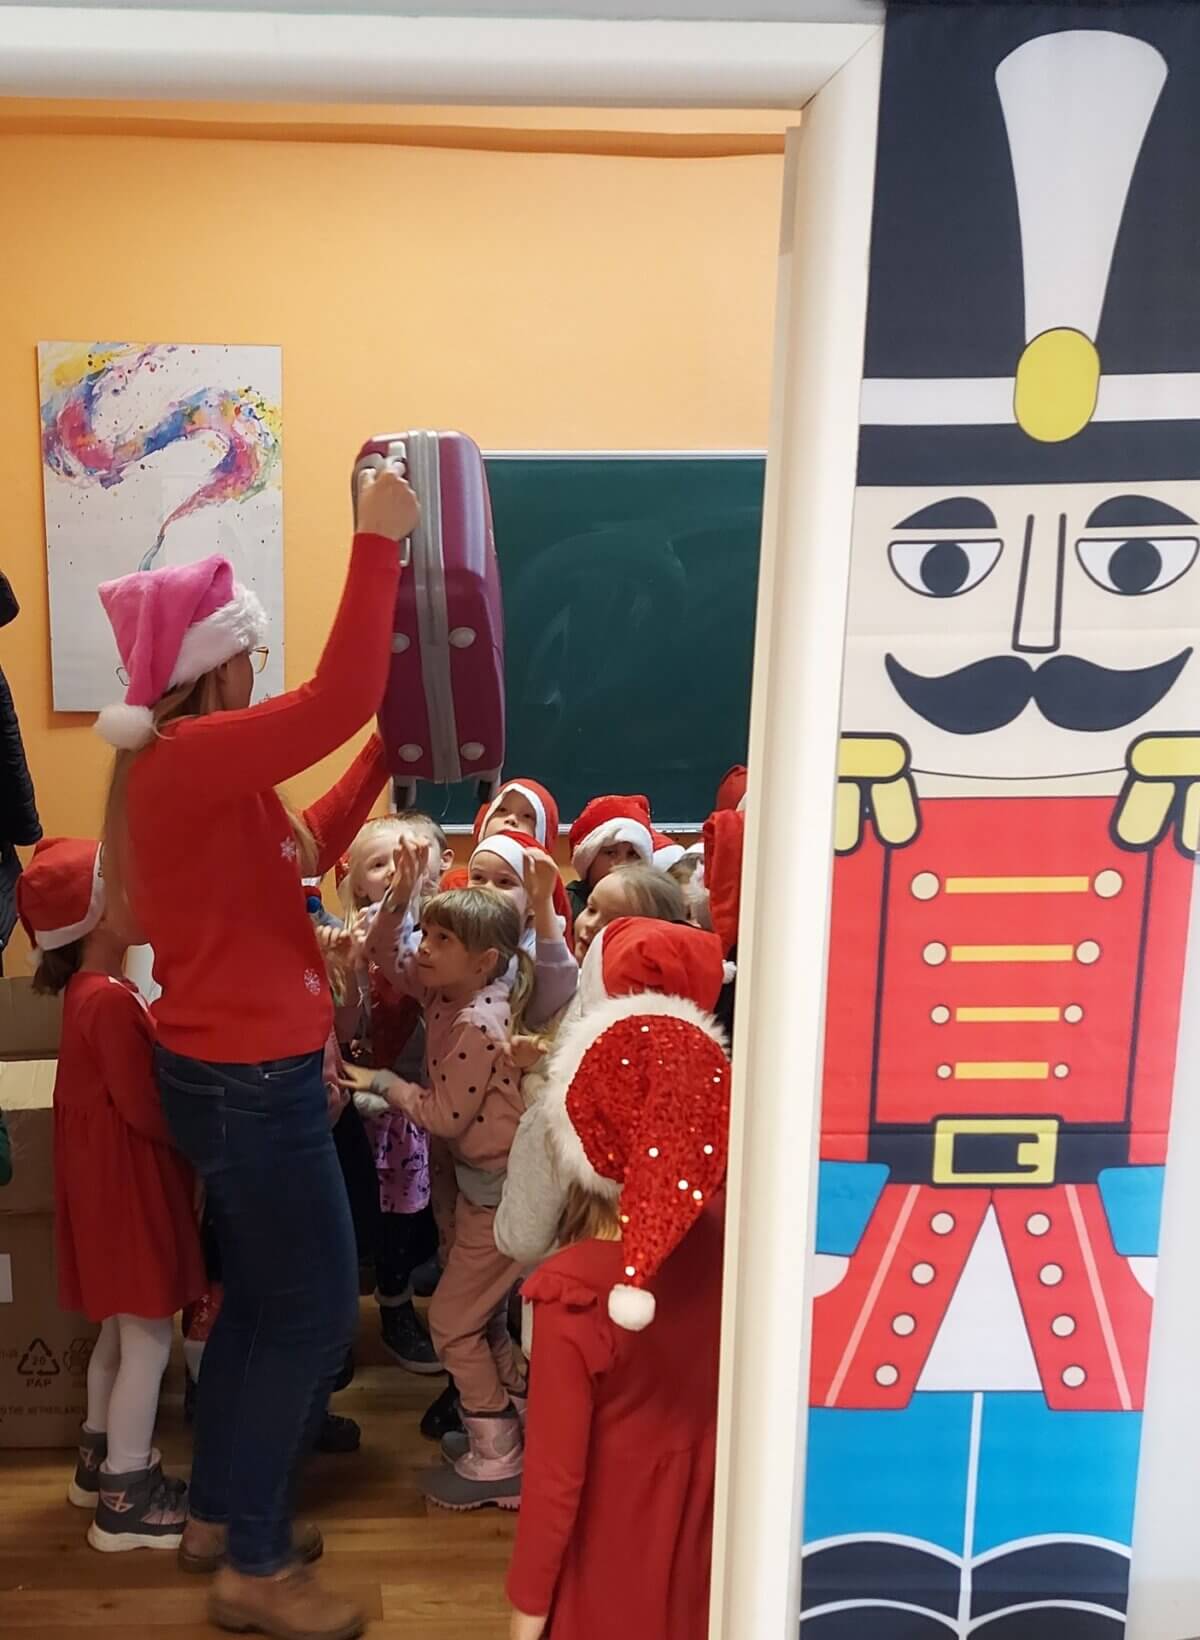 Z prawej strony zdjęcia świąteczny żołnierz w barwach czerwonych, niebieskich i żółtych. Lewa część zdjęcia przedstawia grupkę dzieci w czerwonych mikołajowych czapkach patrzących na osobę dorosłą trzymającą w górze różową walizkę.